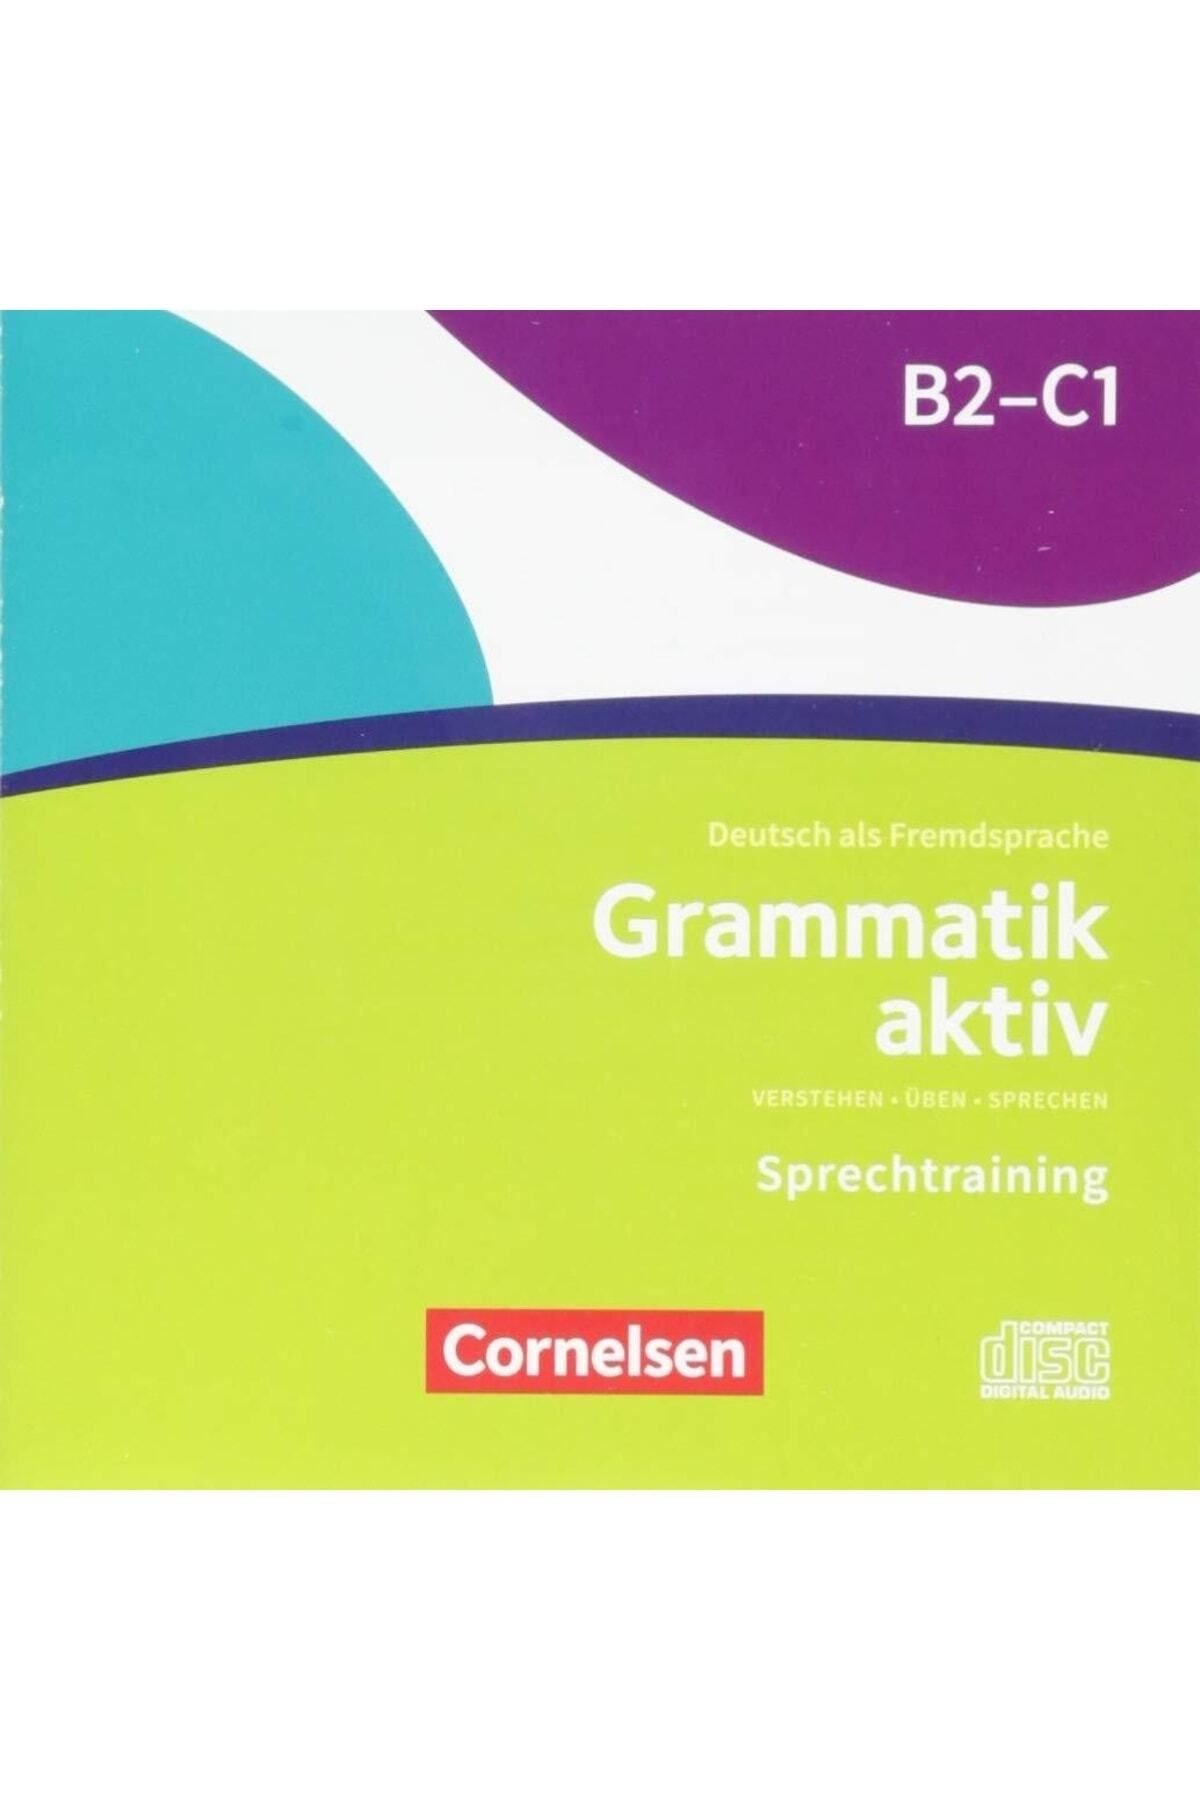 Das grammatik. Немецкий книга Grammatik KTIV. B2-c1 немецкий книга Grammatik ответ. Grammatik c. Grammatik aktiv a1-b1 купить.